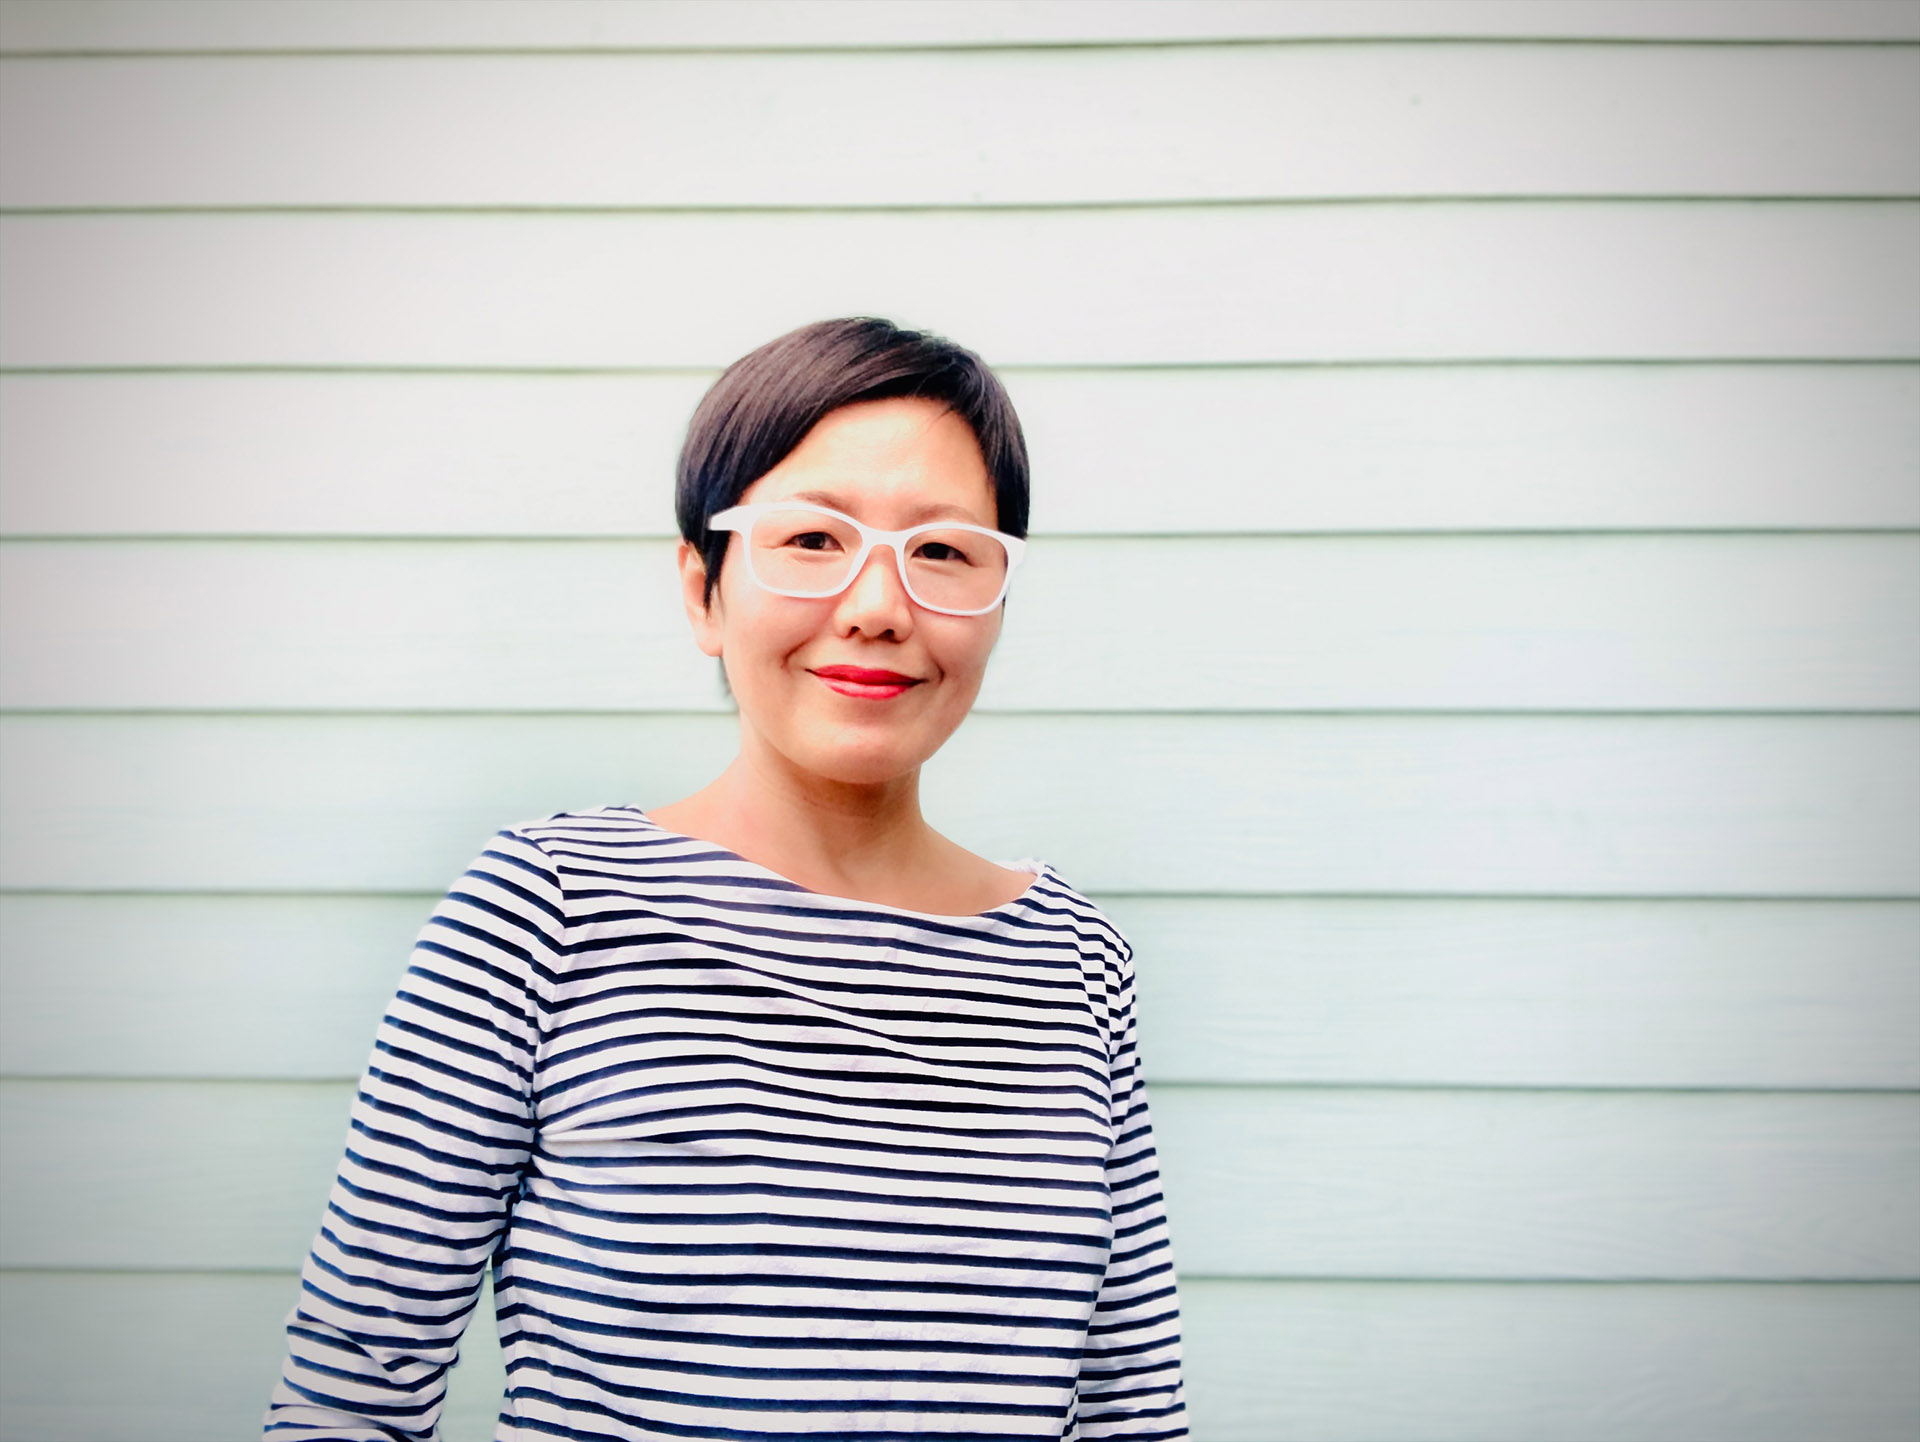 Keum Suk Gendry-Kim ahonda en la separación familiar durante la guerra de Corea